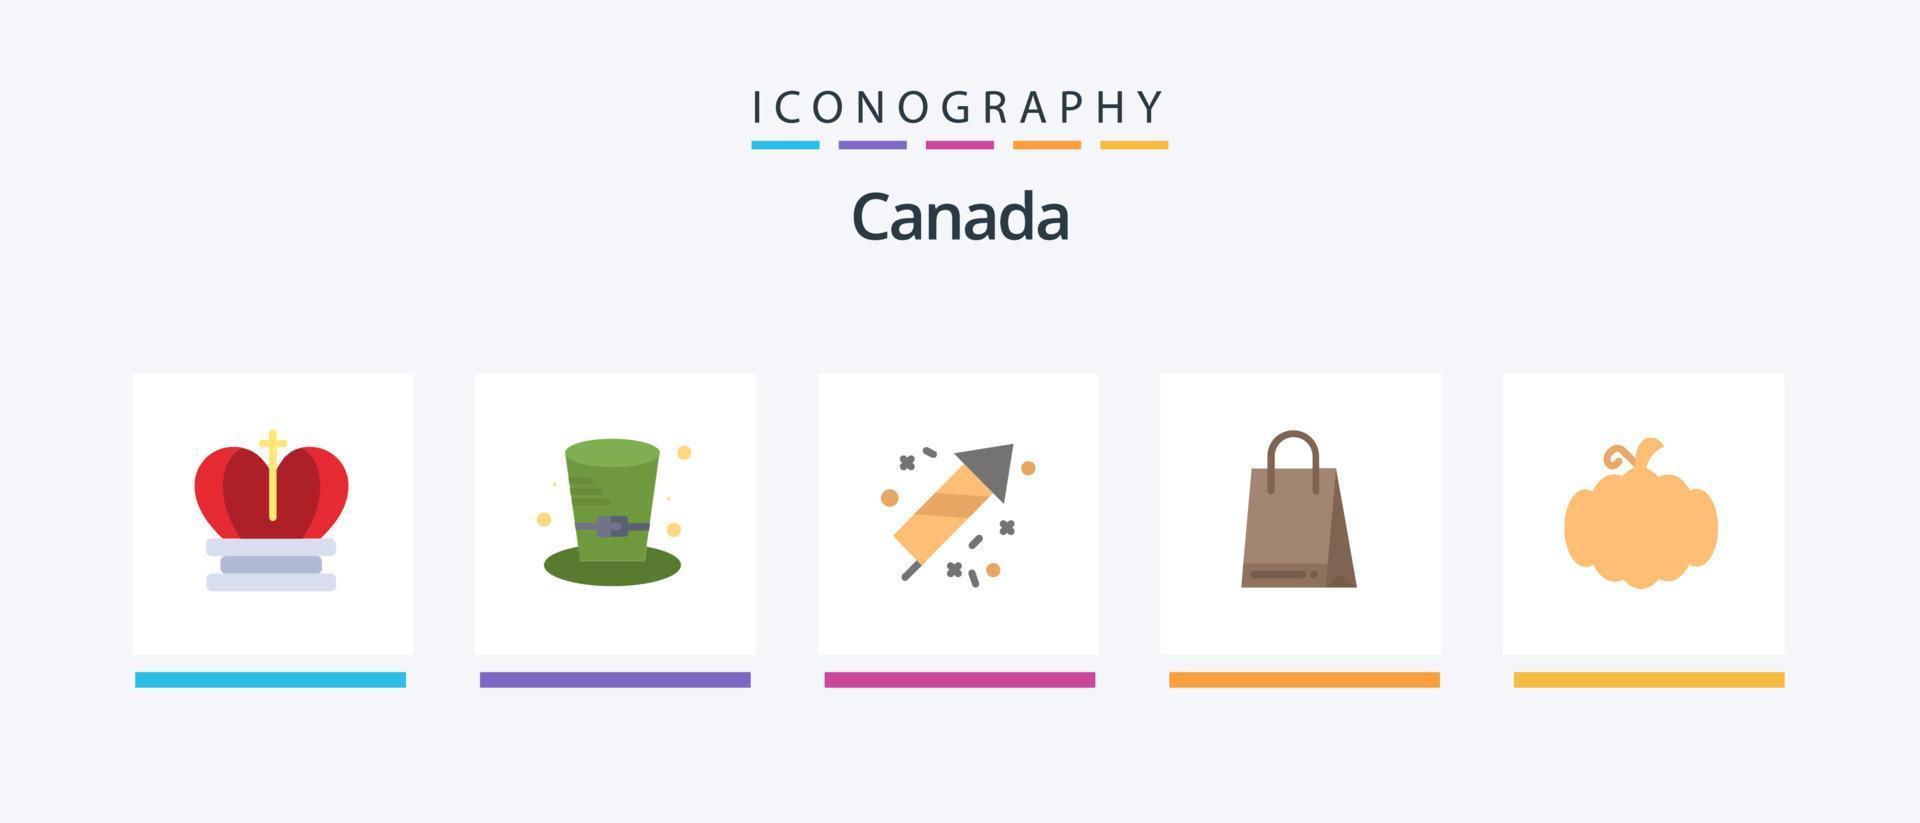 Canada vlak 5 icoon pak inclusief pompoen. komkommer. brand werk. Canada. tas. creatief pictogrammen ontwerp vector